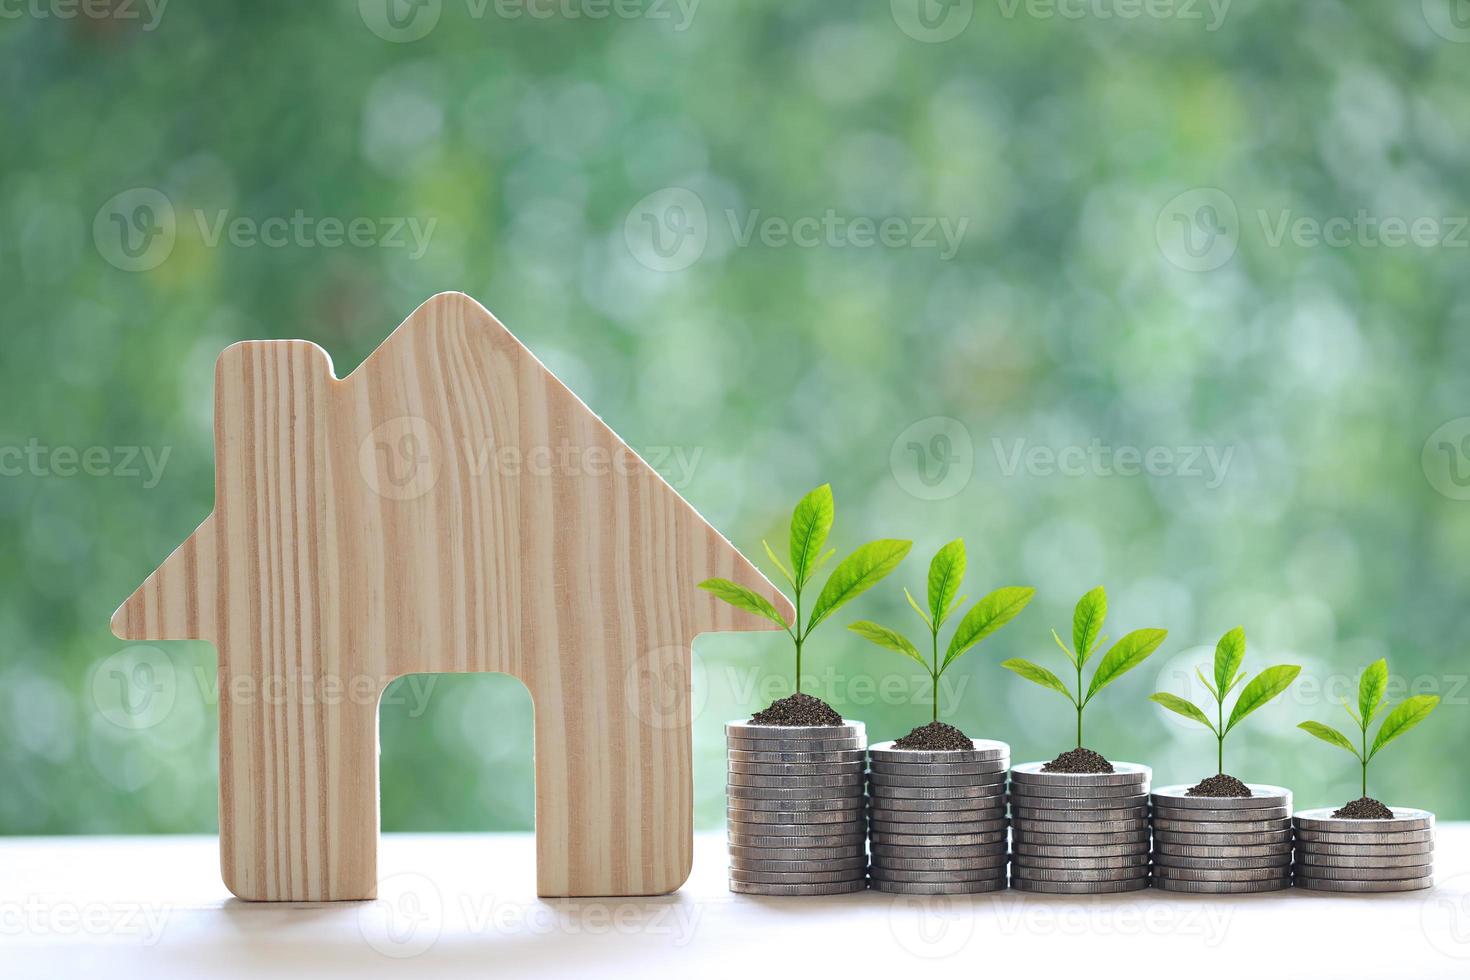 modellhus och träd som växer på en hög med myntpengar på naturlig grön bakgrund, affärsinvestering och fastighetskoncept foto